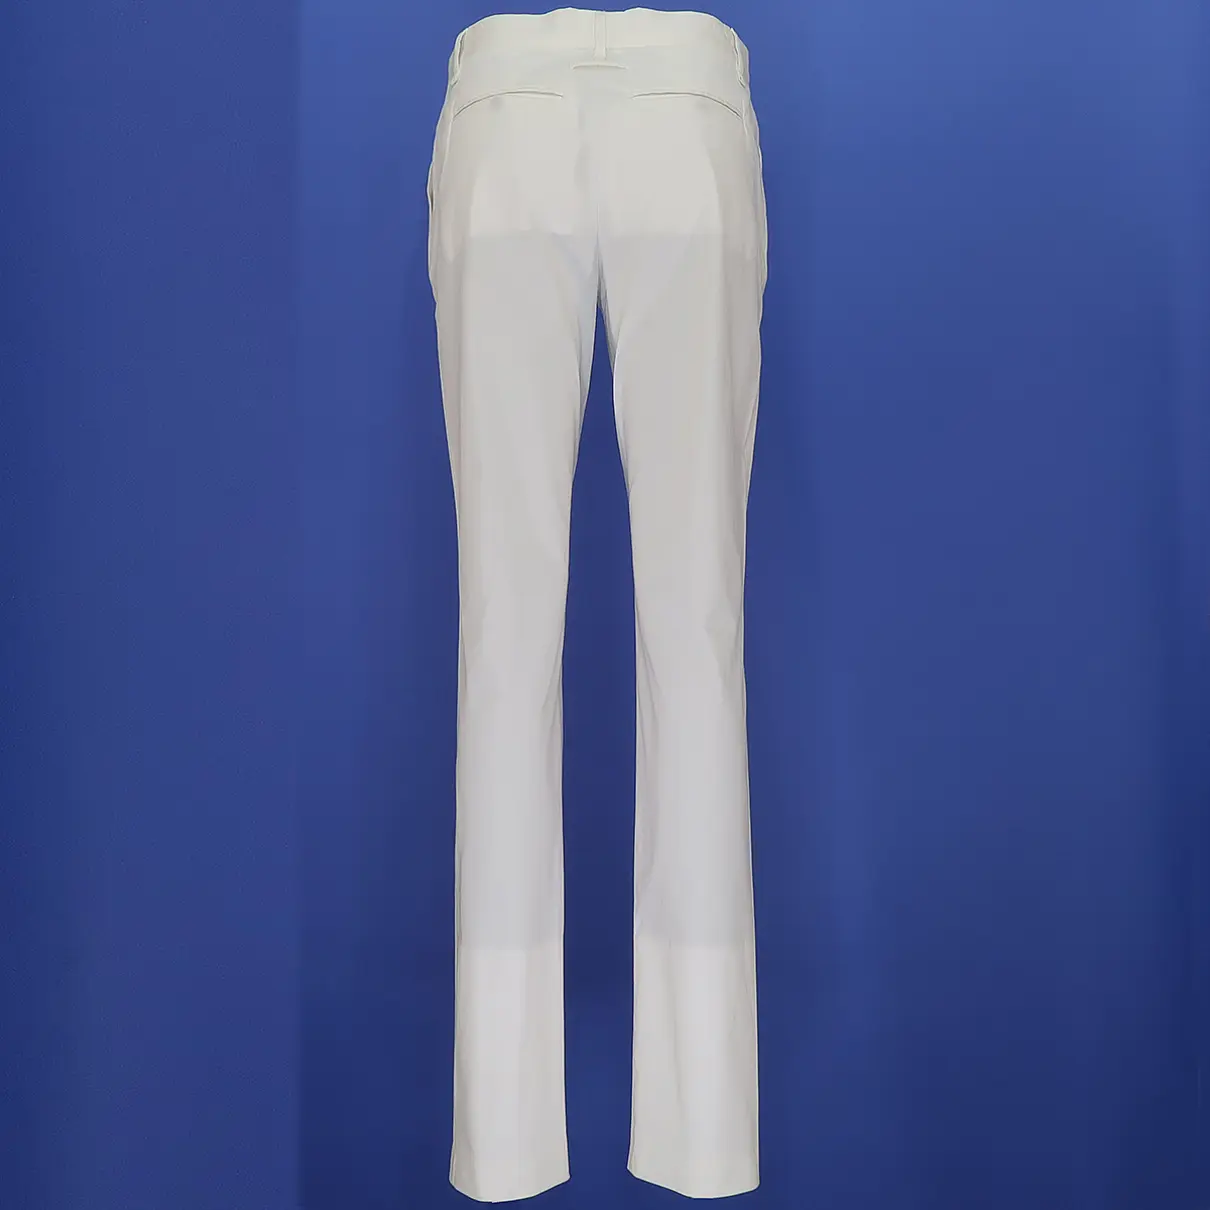 Buy Jean Paul Gaultier Trousers online